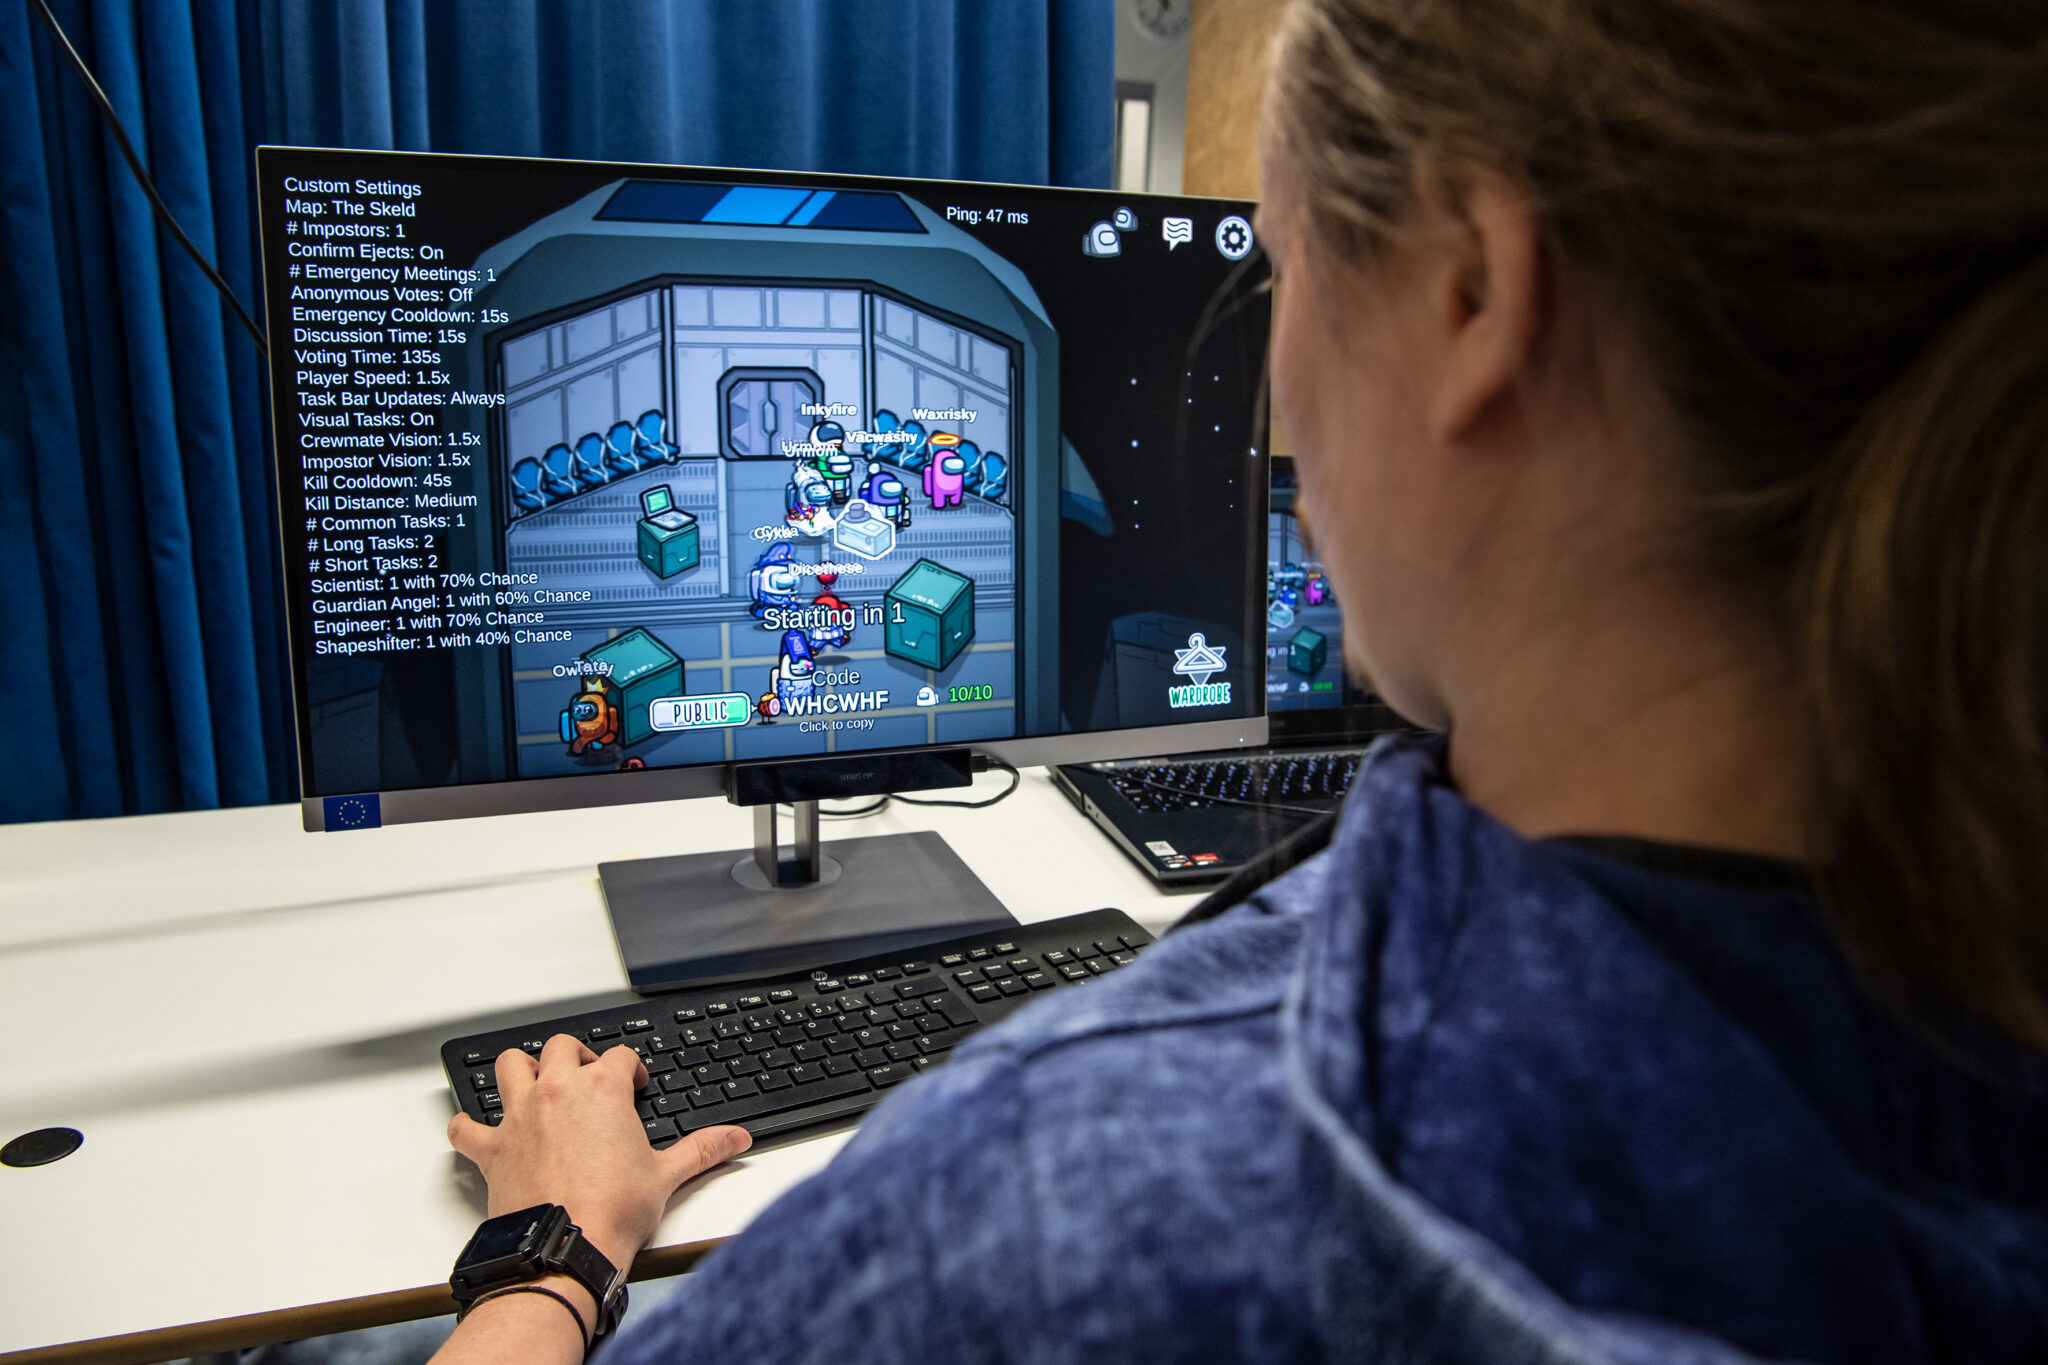 Kuvassa mies pelaa Among Us-peliä tietokoneella selkä kameraan päin. Tietokoneen näytöllä näkyy pelinäkymä ja pelihahmoja.